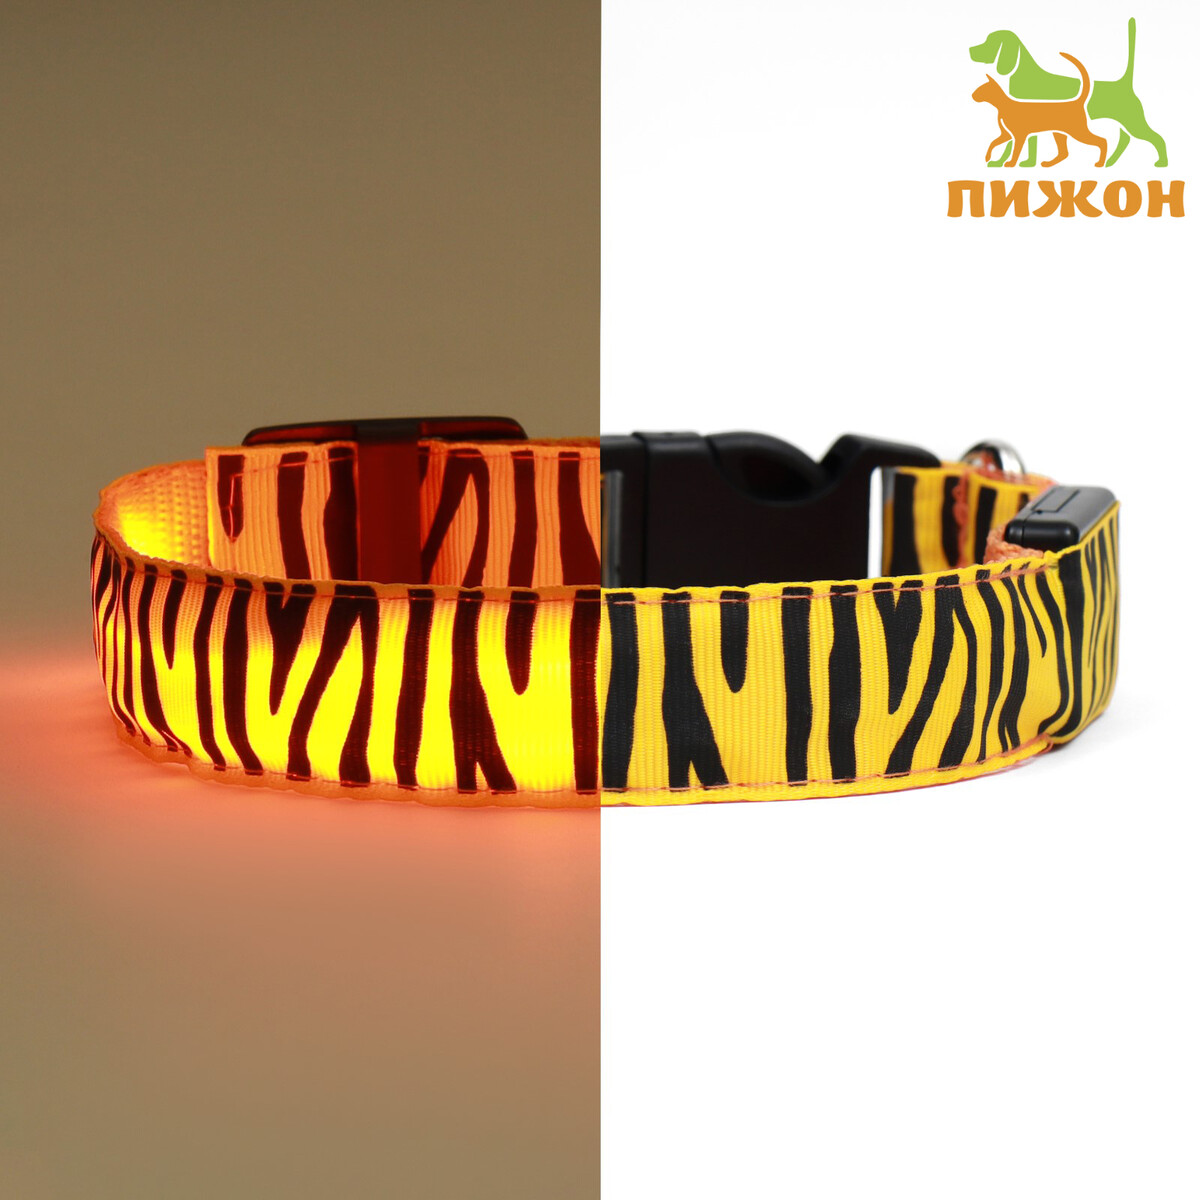 Ошейник с подсветкой тигр 3 режима свечения размер м, ош 32-50 х 2,5 см оранжевый спать как тигр